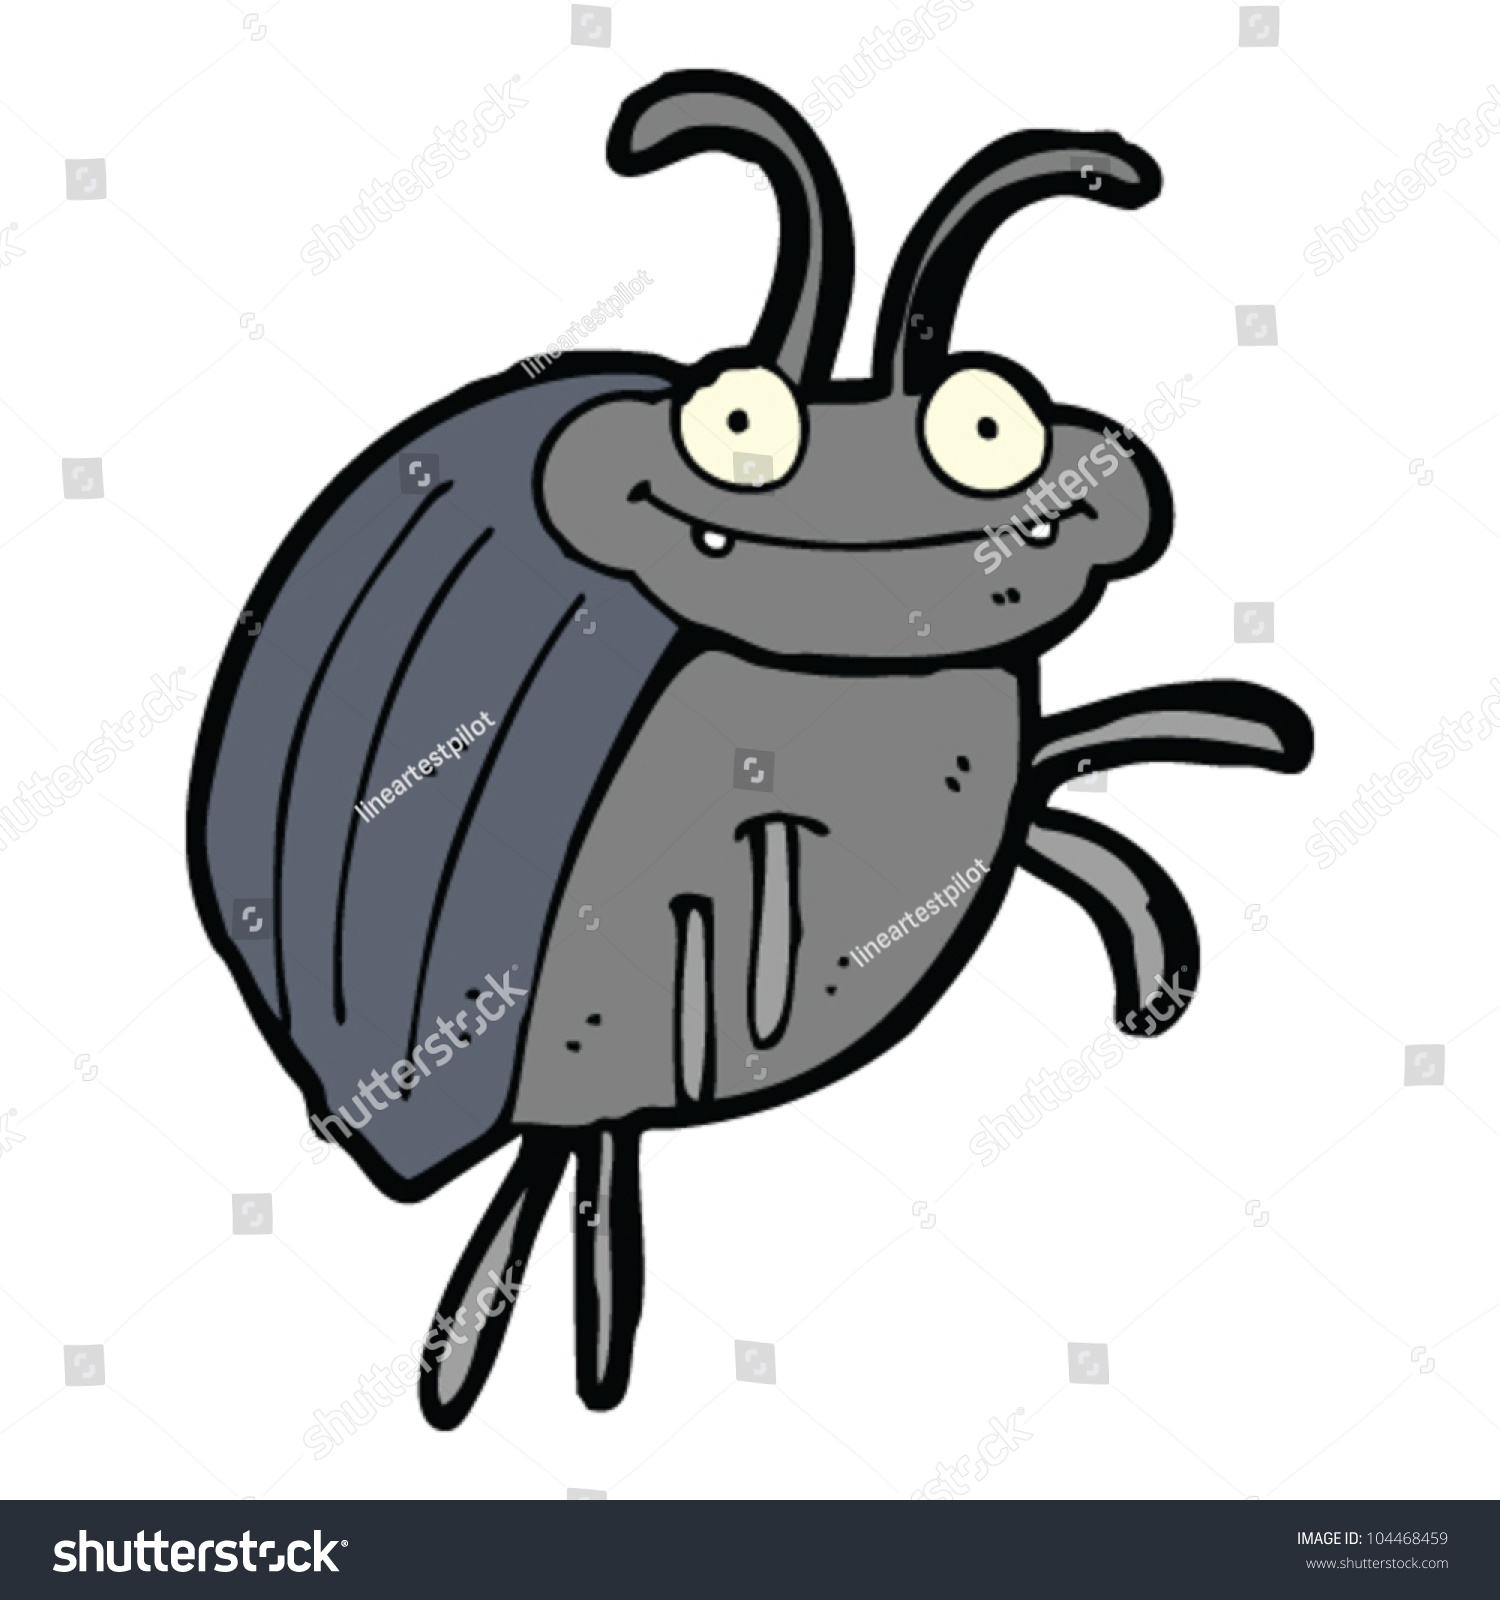 Funny Bug Cartoon Stock Vector Illustration 104468459 Shutterstock